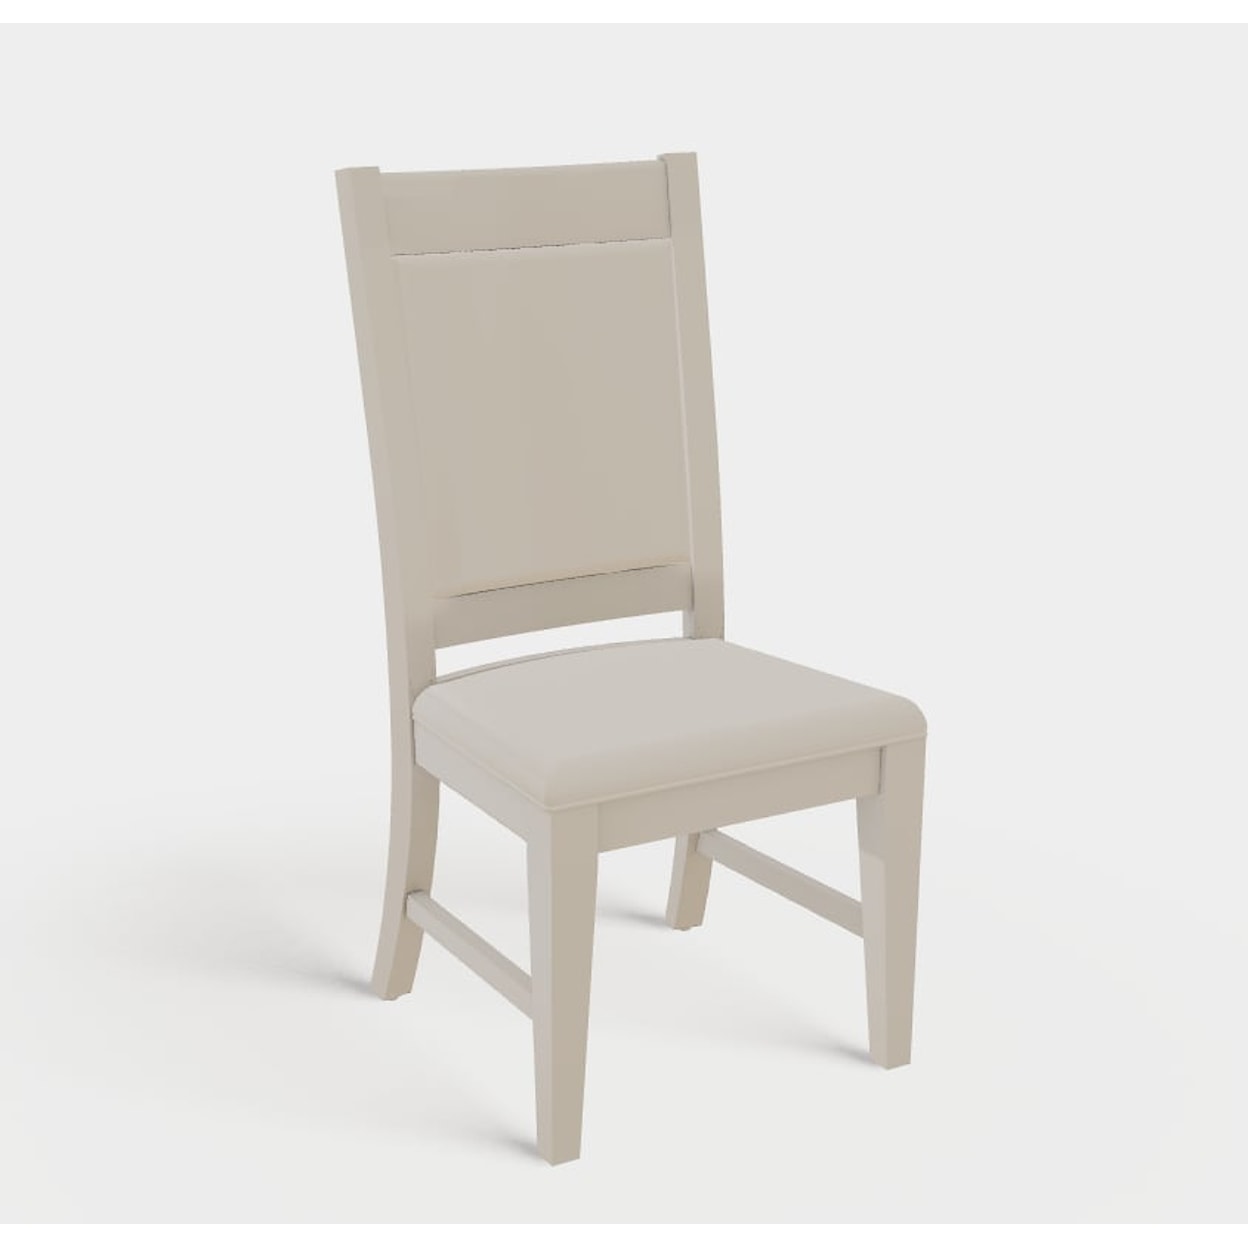 Mavin Sinclair Customizable Sinclair Chair/Barstool Line